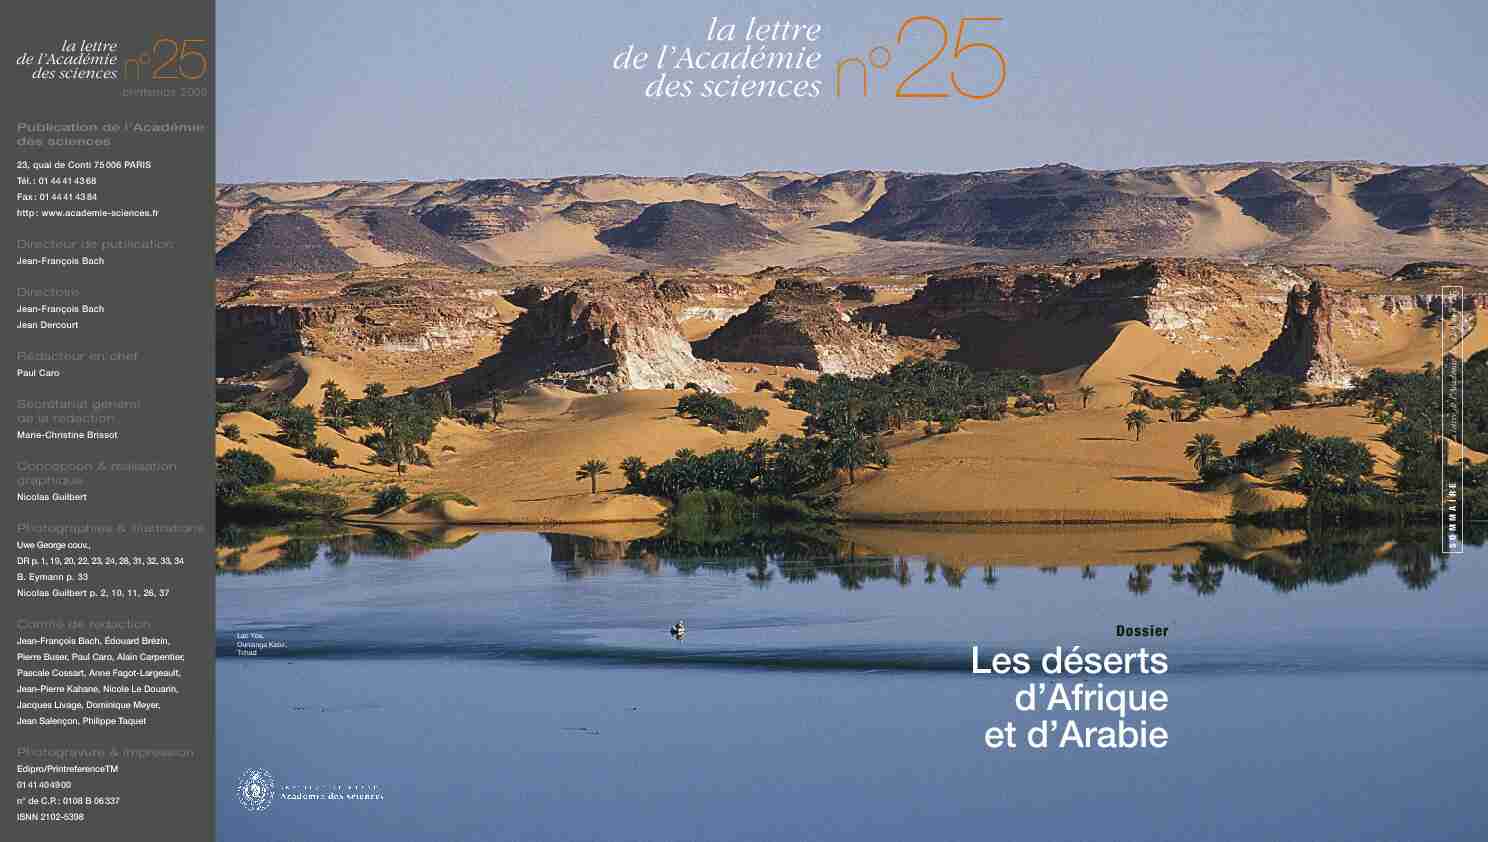 [PDF] Les déserts dAfrique et dArabie - La Lettre n°25 - Académie des